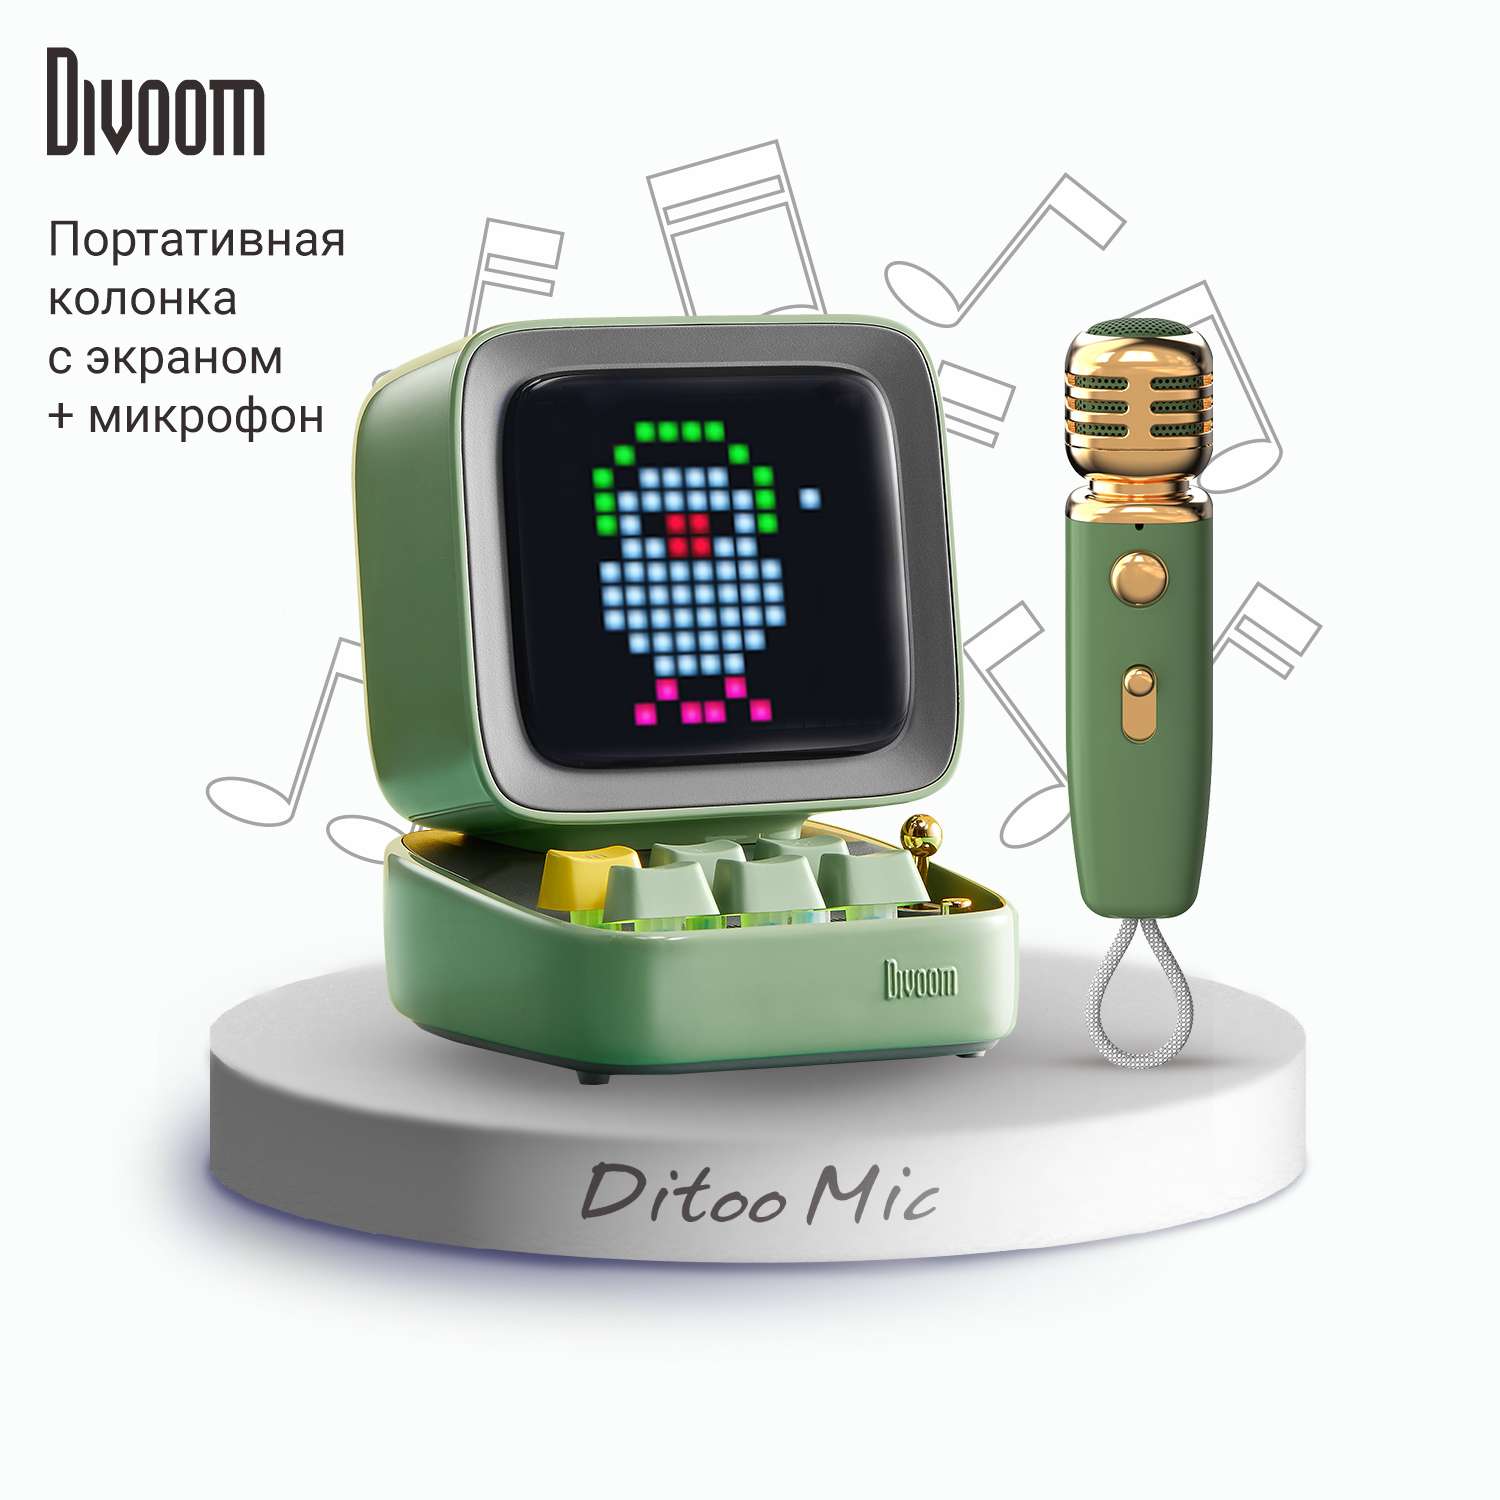 Беспроводная колонка DIVOOM портативная Ditoo Mic зеленая с микрофоном и пиксельным LED-дисплеем - фото 1